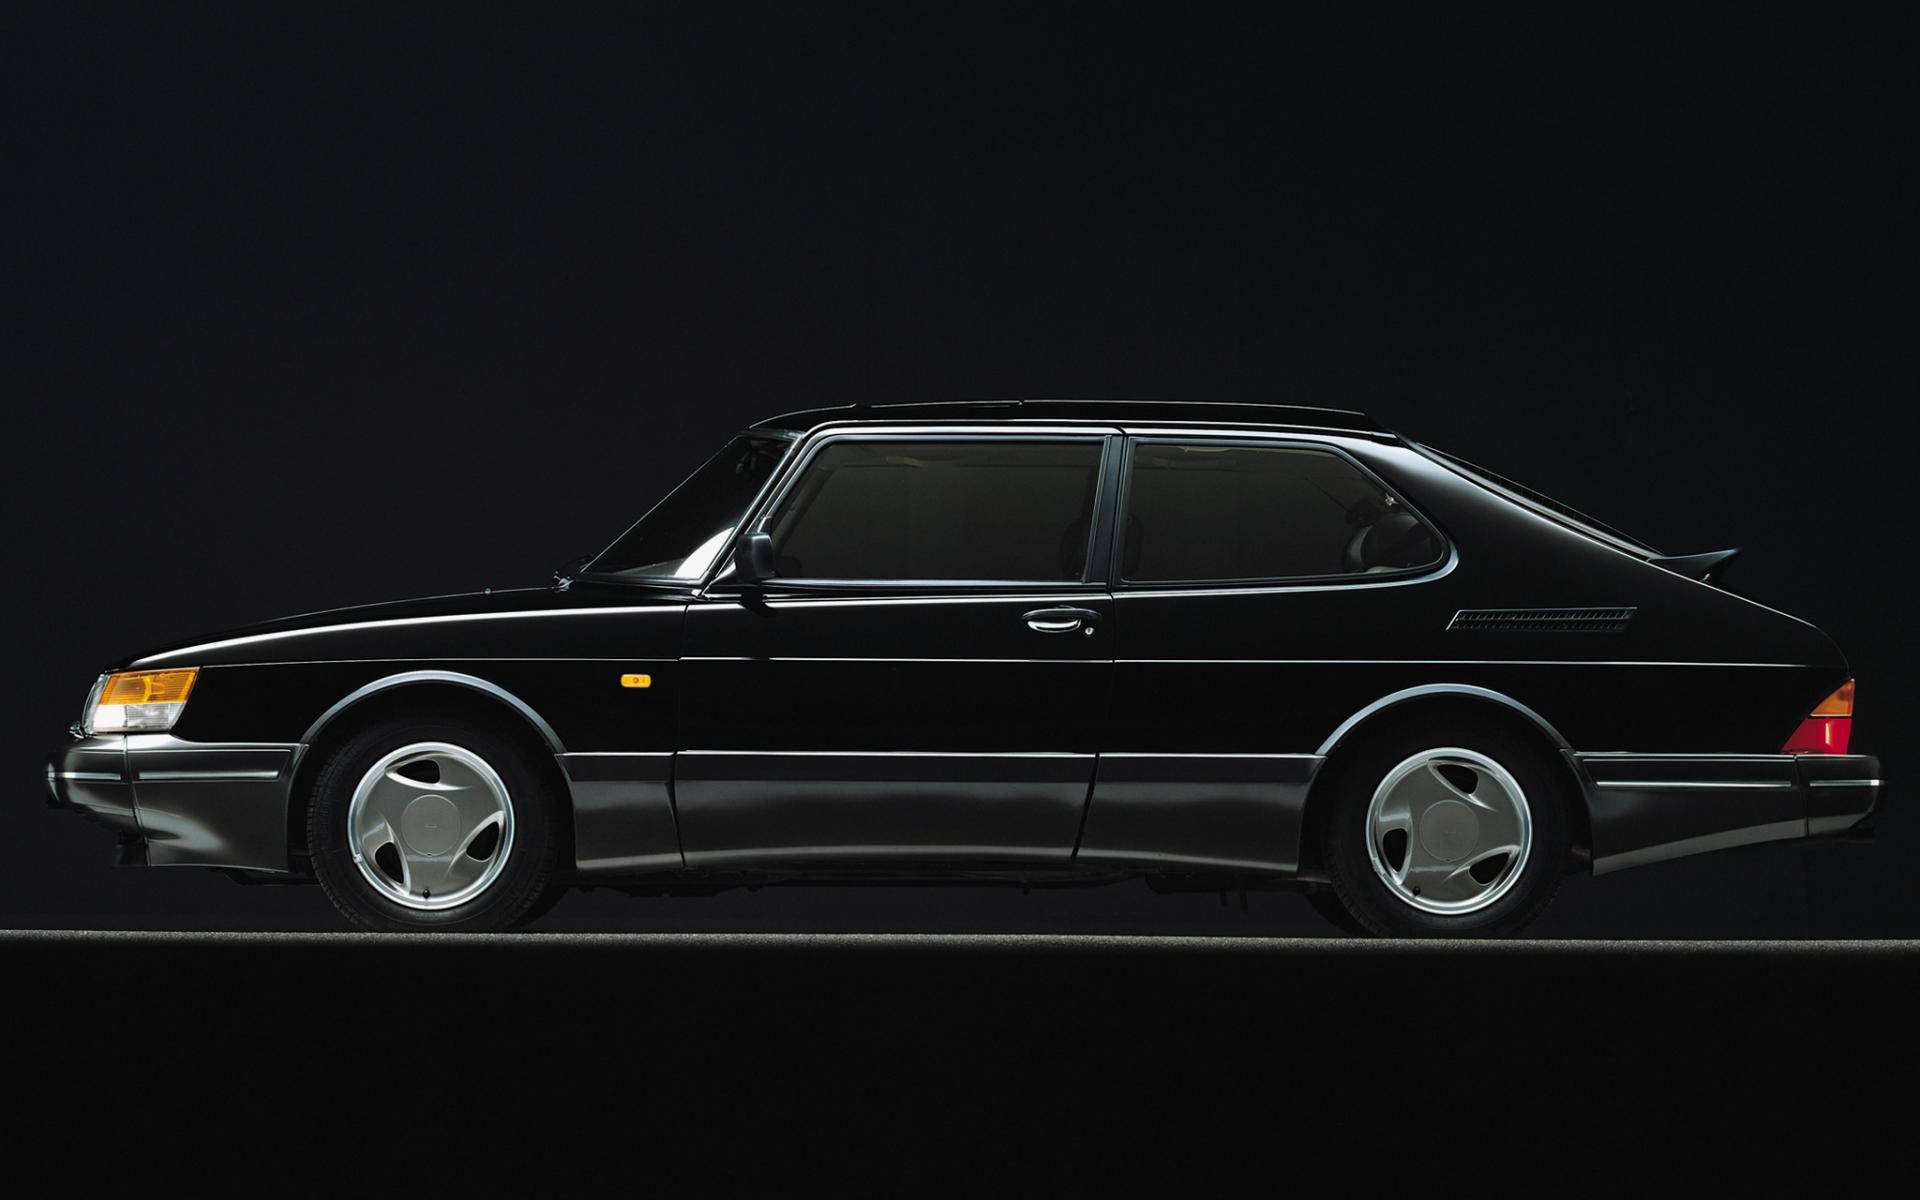 Black Saab 900 Turbo Background